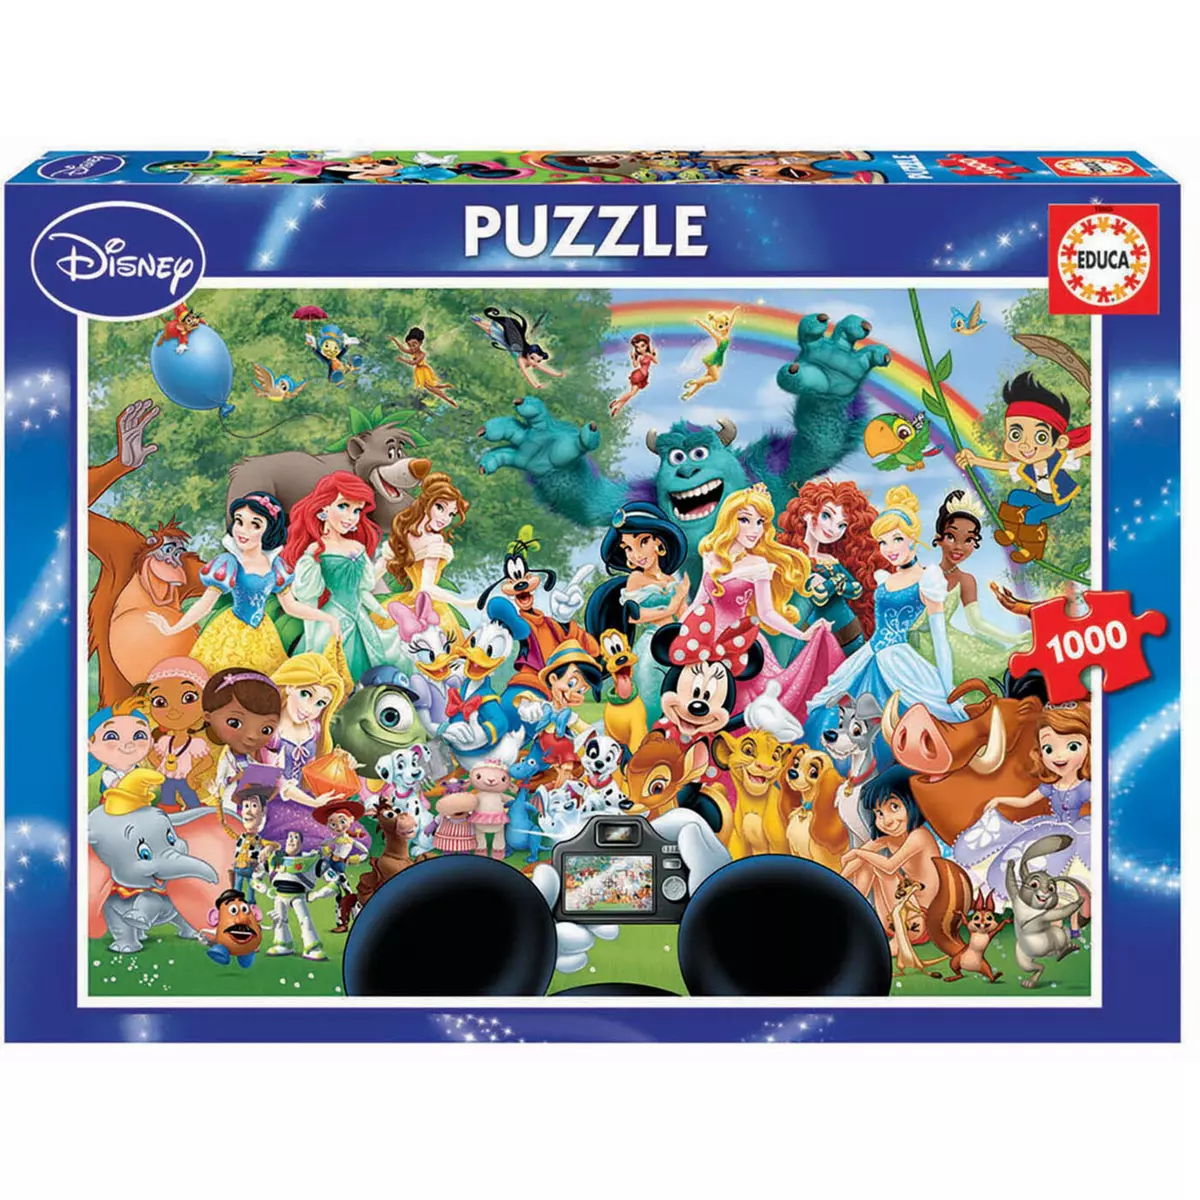 EDUCA Puzzle le merveilleux monde de Disney